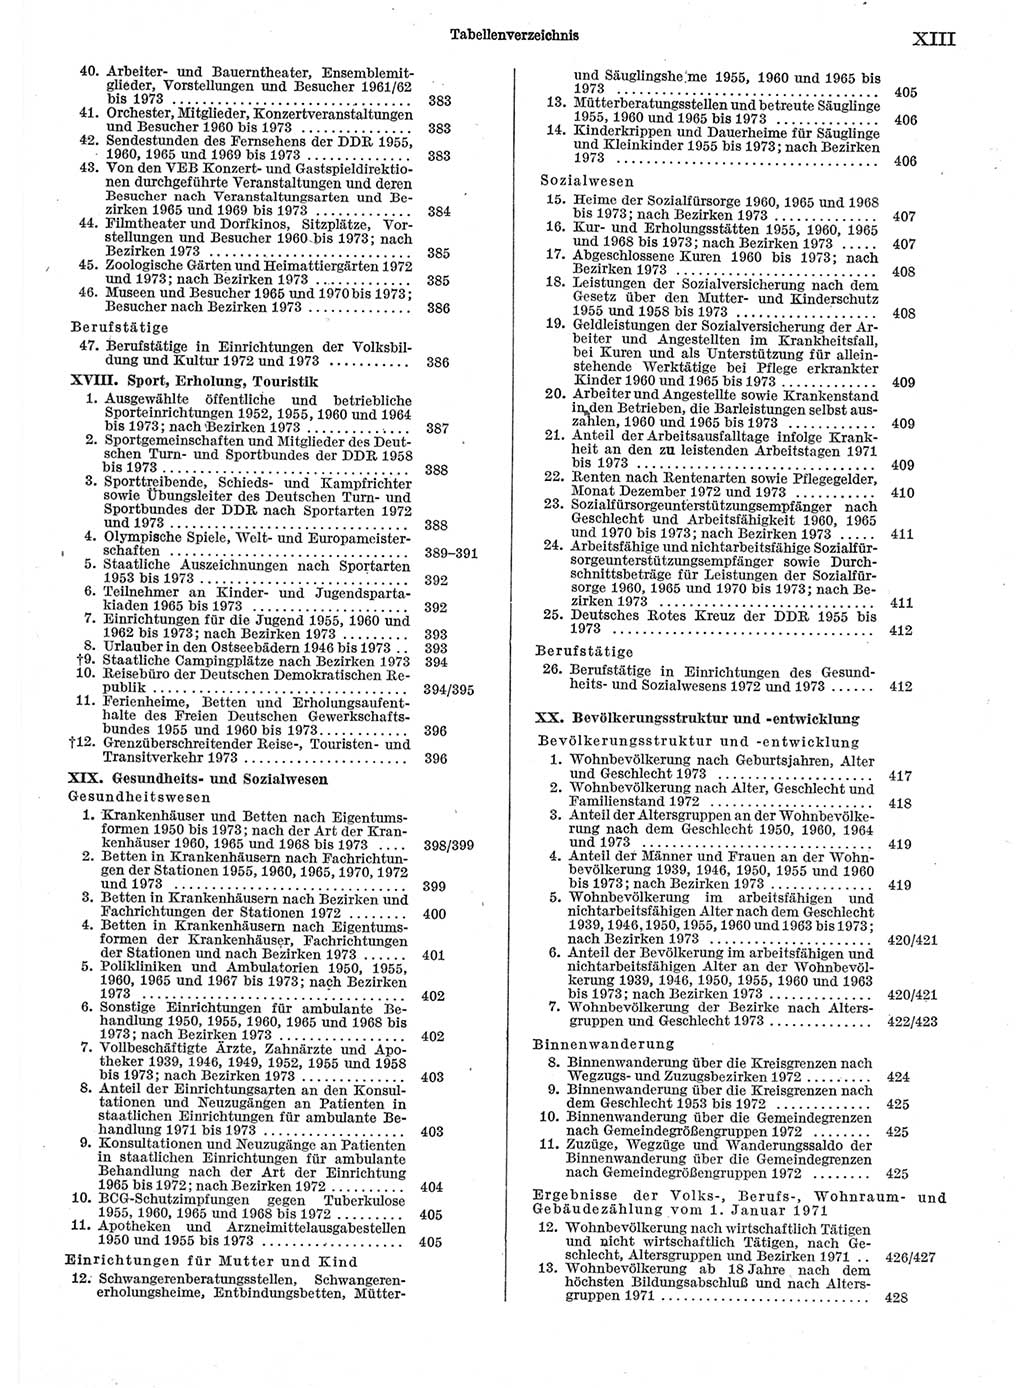 Statistisches Jahrbuch der Deutschen Demokratischen Republik (DDR) 1974, Seite 13 (Stat. Jb. DDR 1974, S. 13)